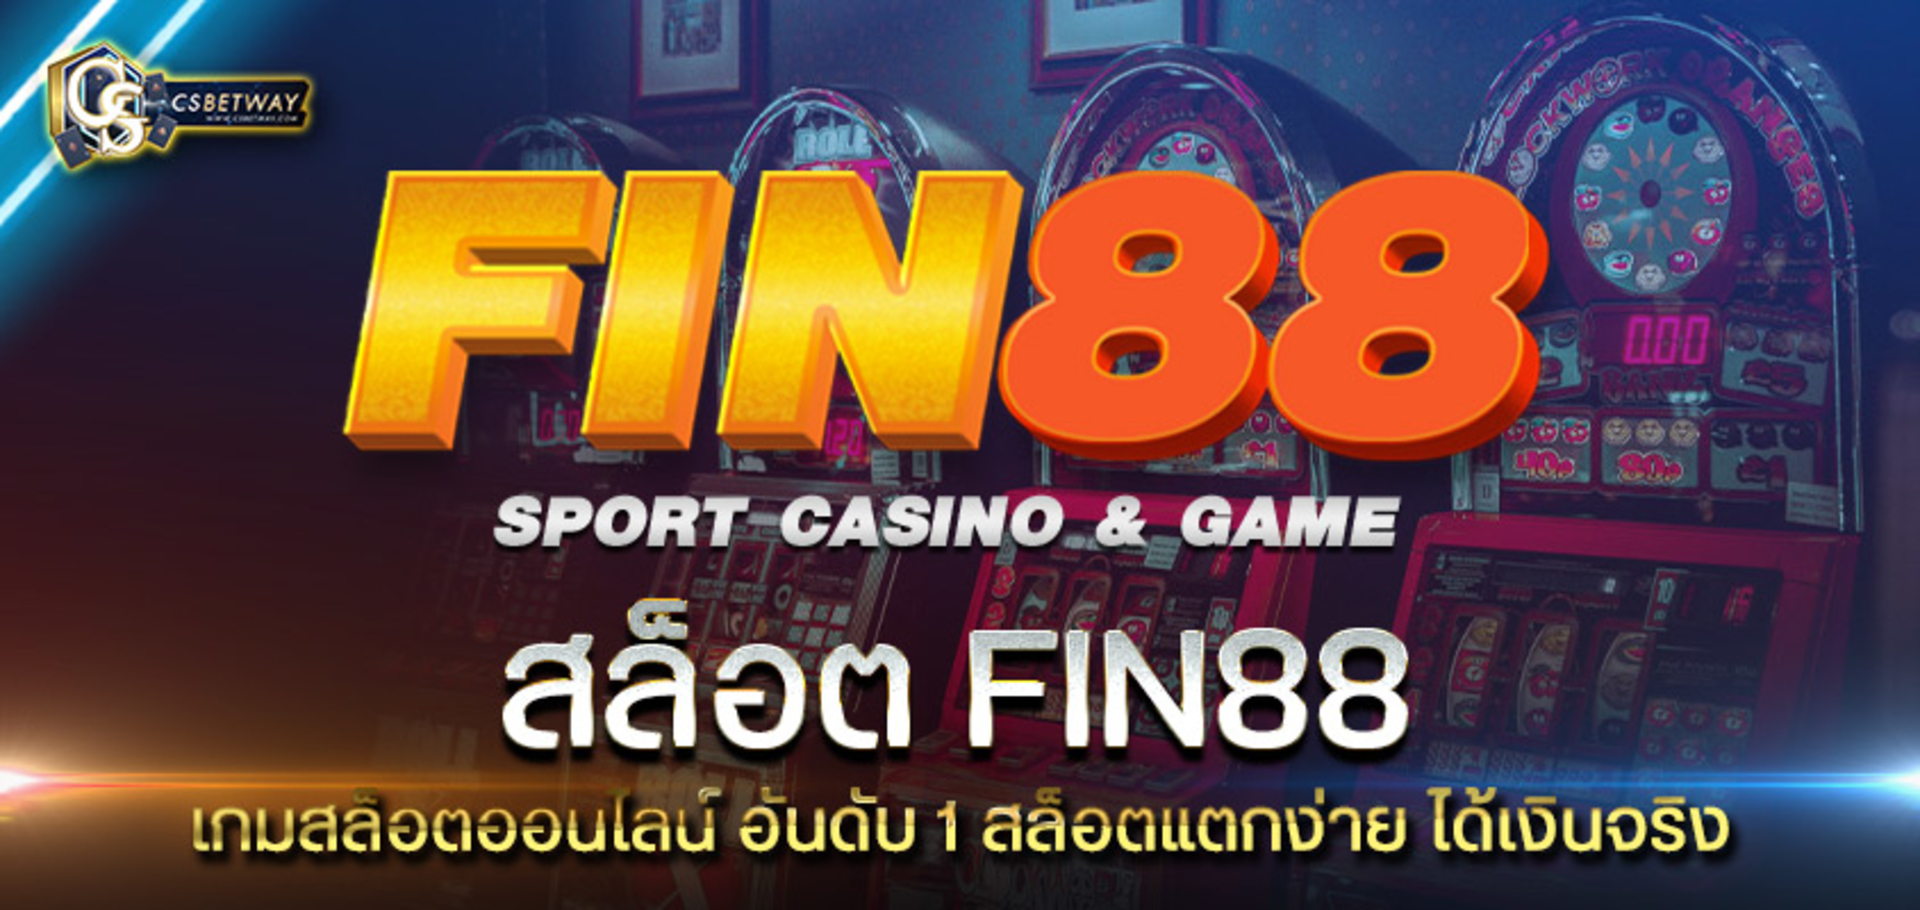 สล็อต fin88 เกมสล็อตออนไลน์ อันดับ 1 สล็อตแตกง่าย ได้เงินจริง เครดิตไม่อั้น ฟิน88